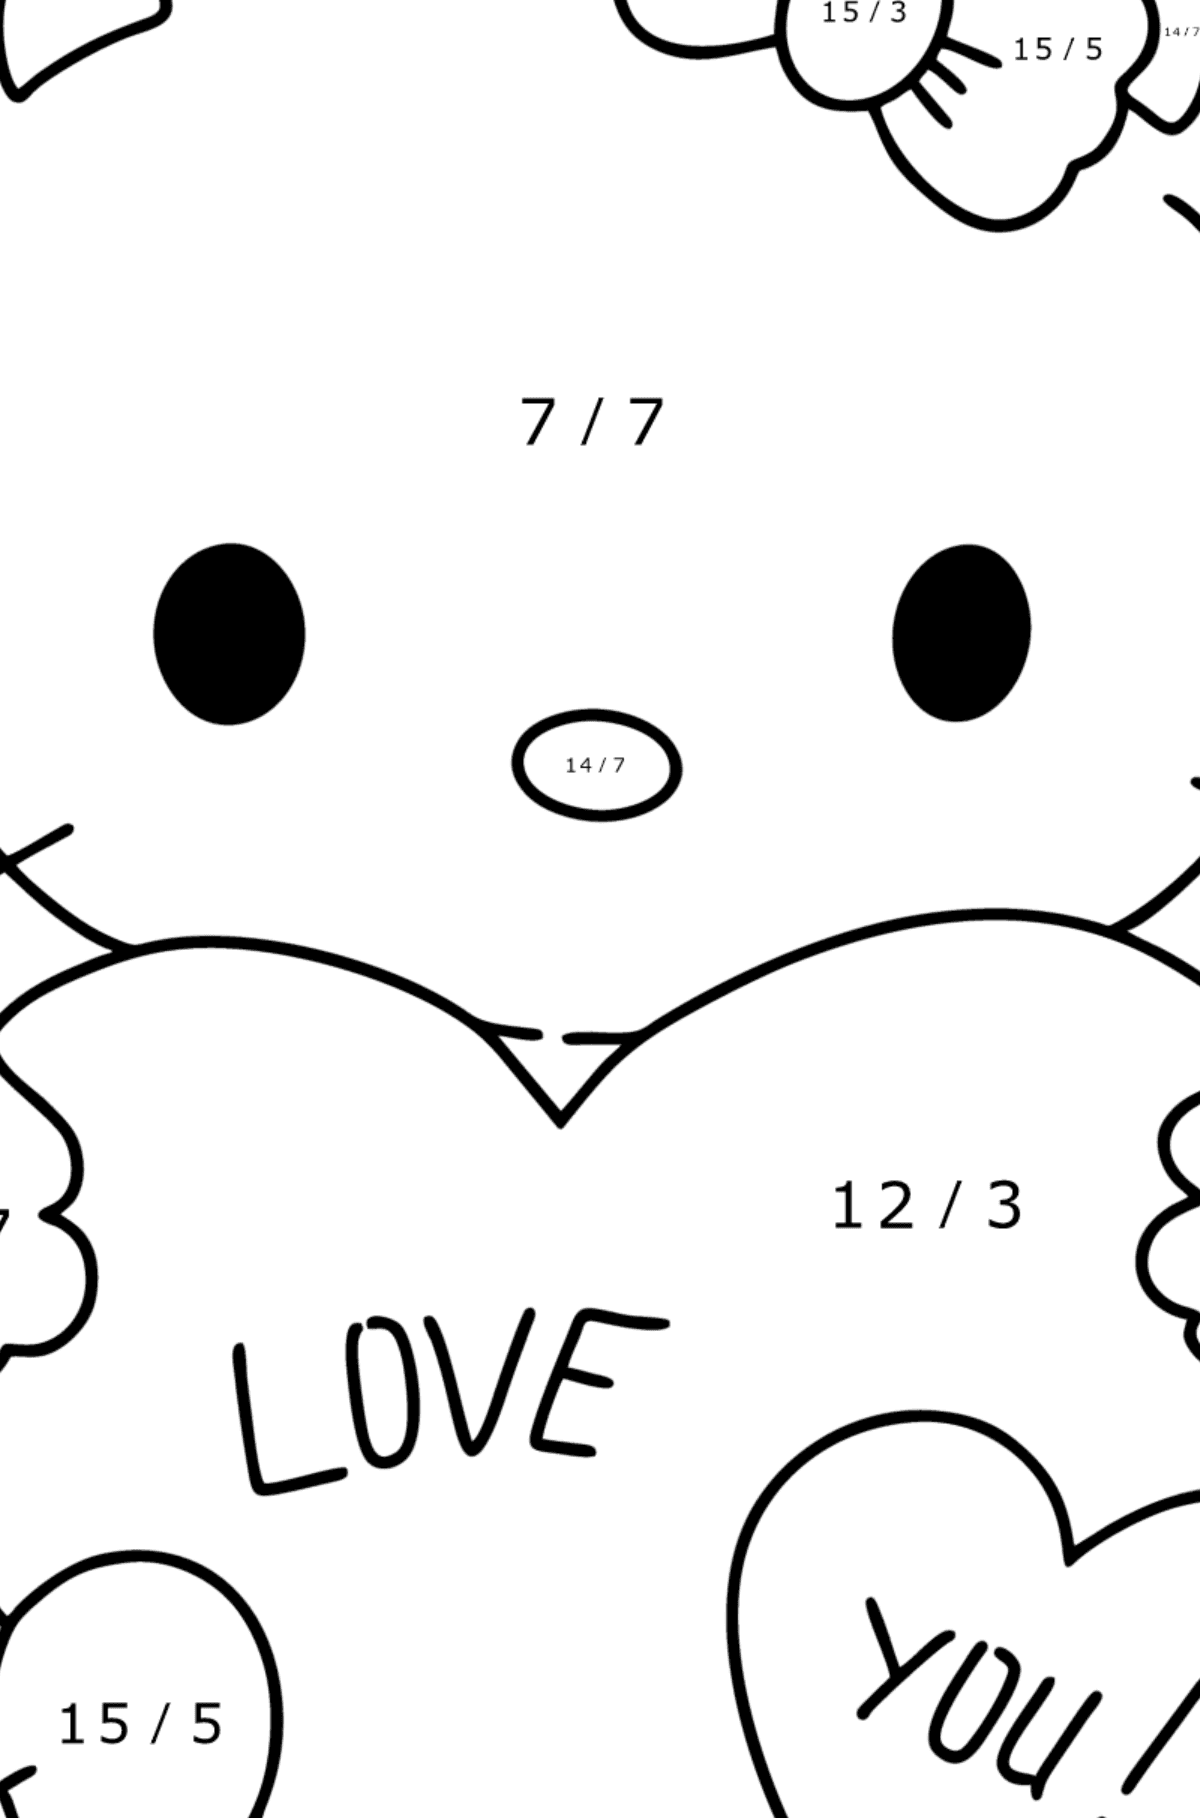 Boyama sayfası Hello Kitty ve kalpler - Matematik Boyama - Bölme çocuklar için